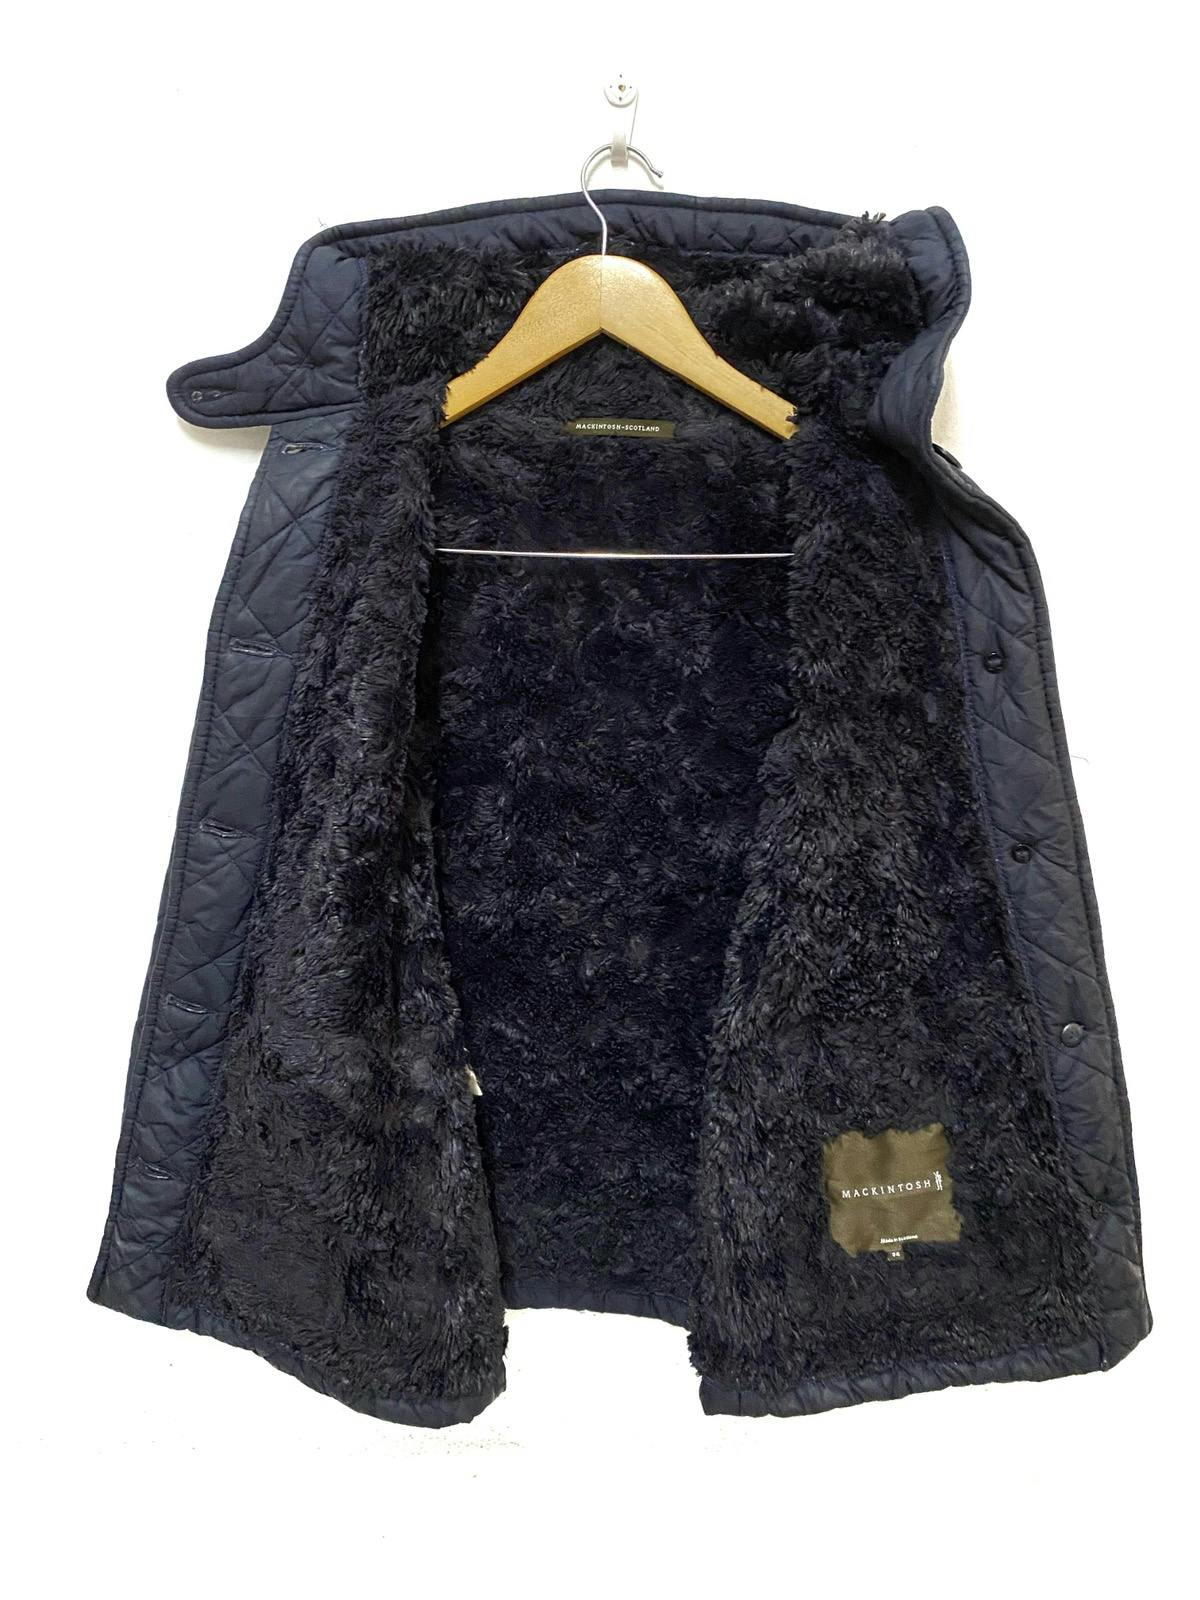 Mackintosh Waverly Quilted Fur Jacket Coat - 8